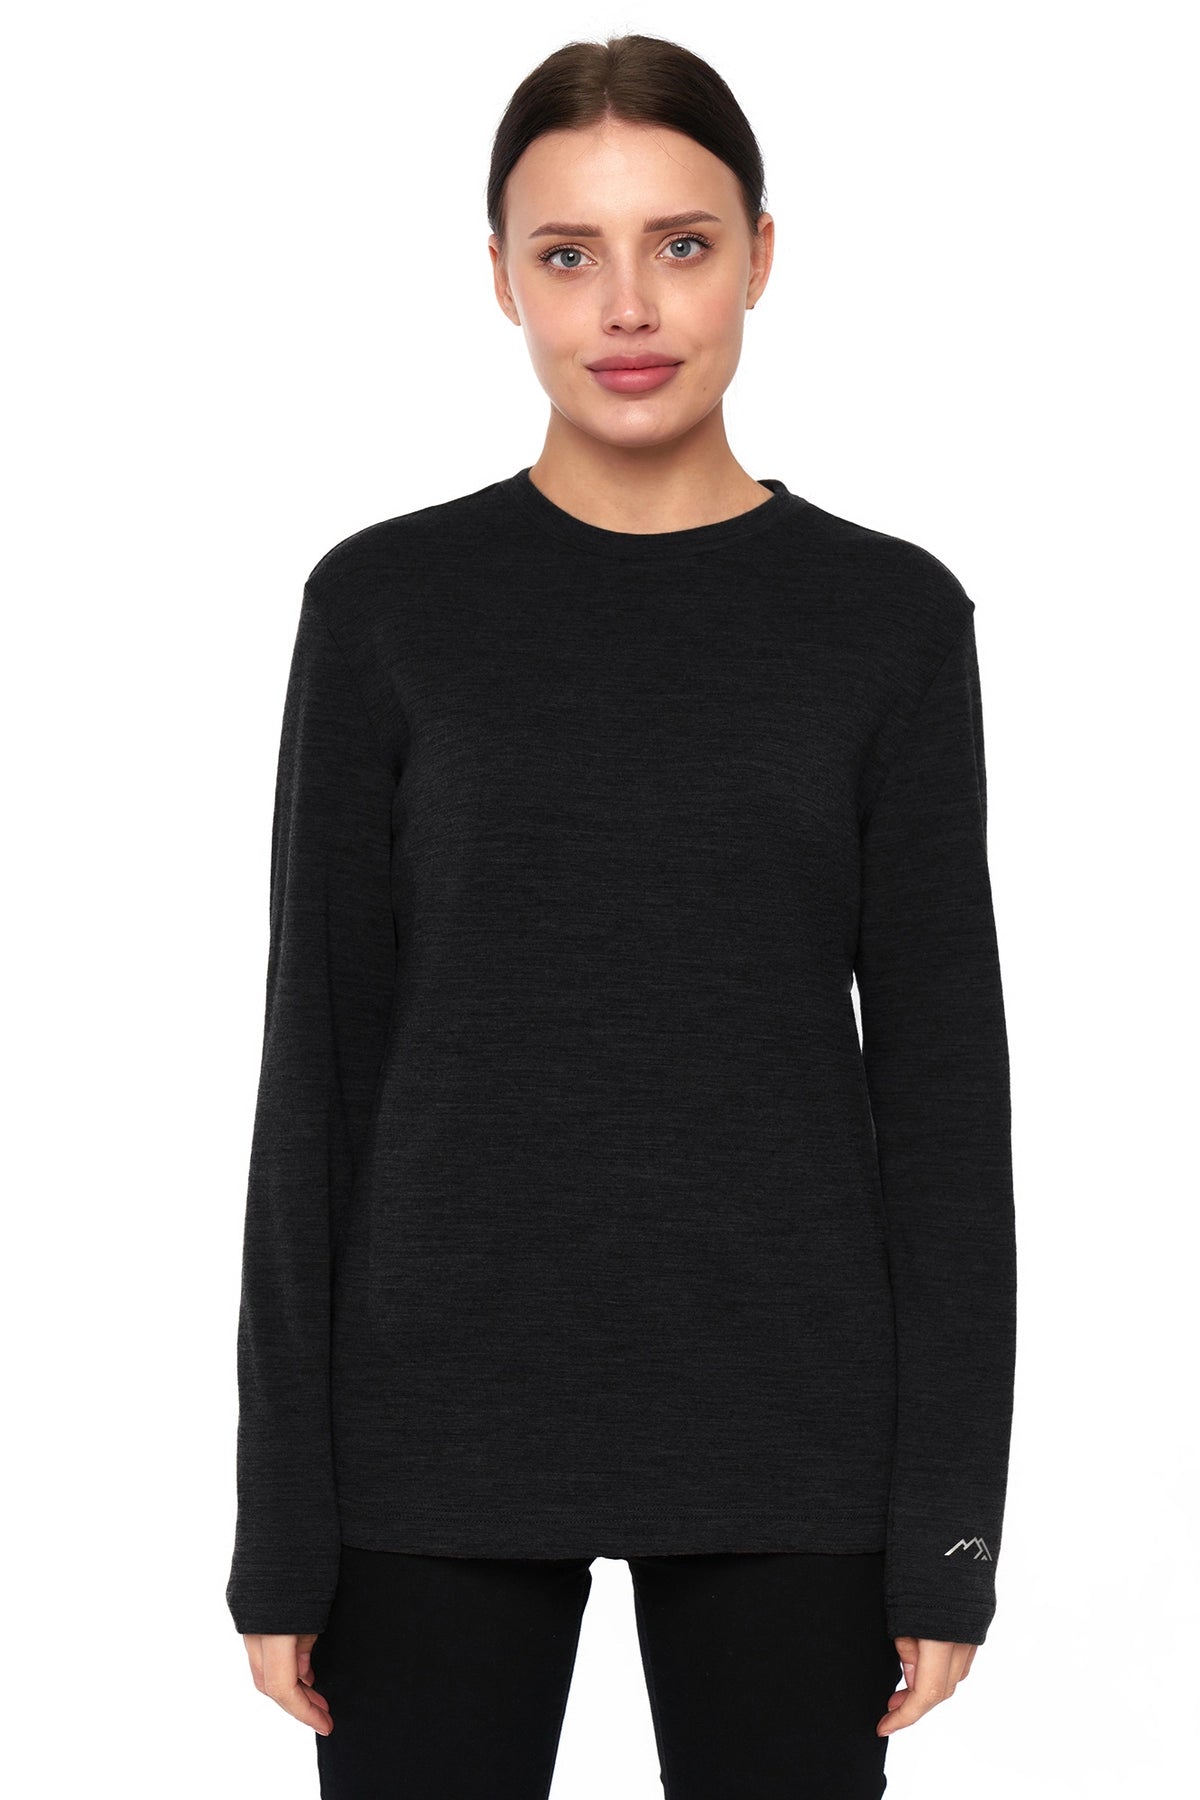 Women's Merino Long Sleeve Shirt 170 Heathered Black